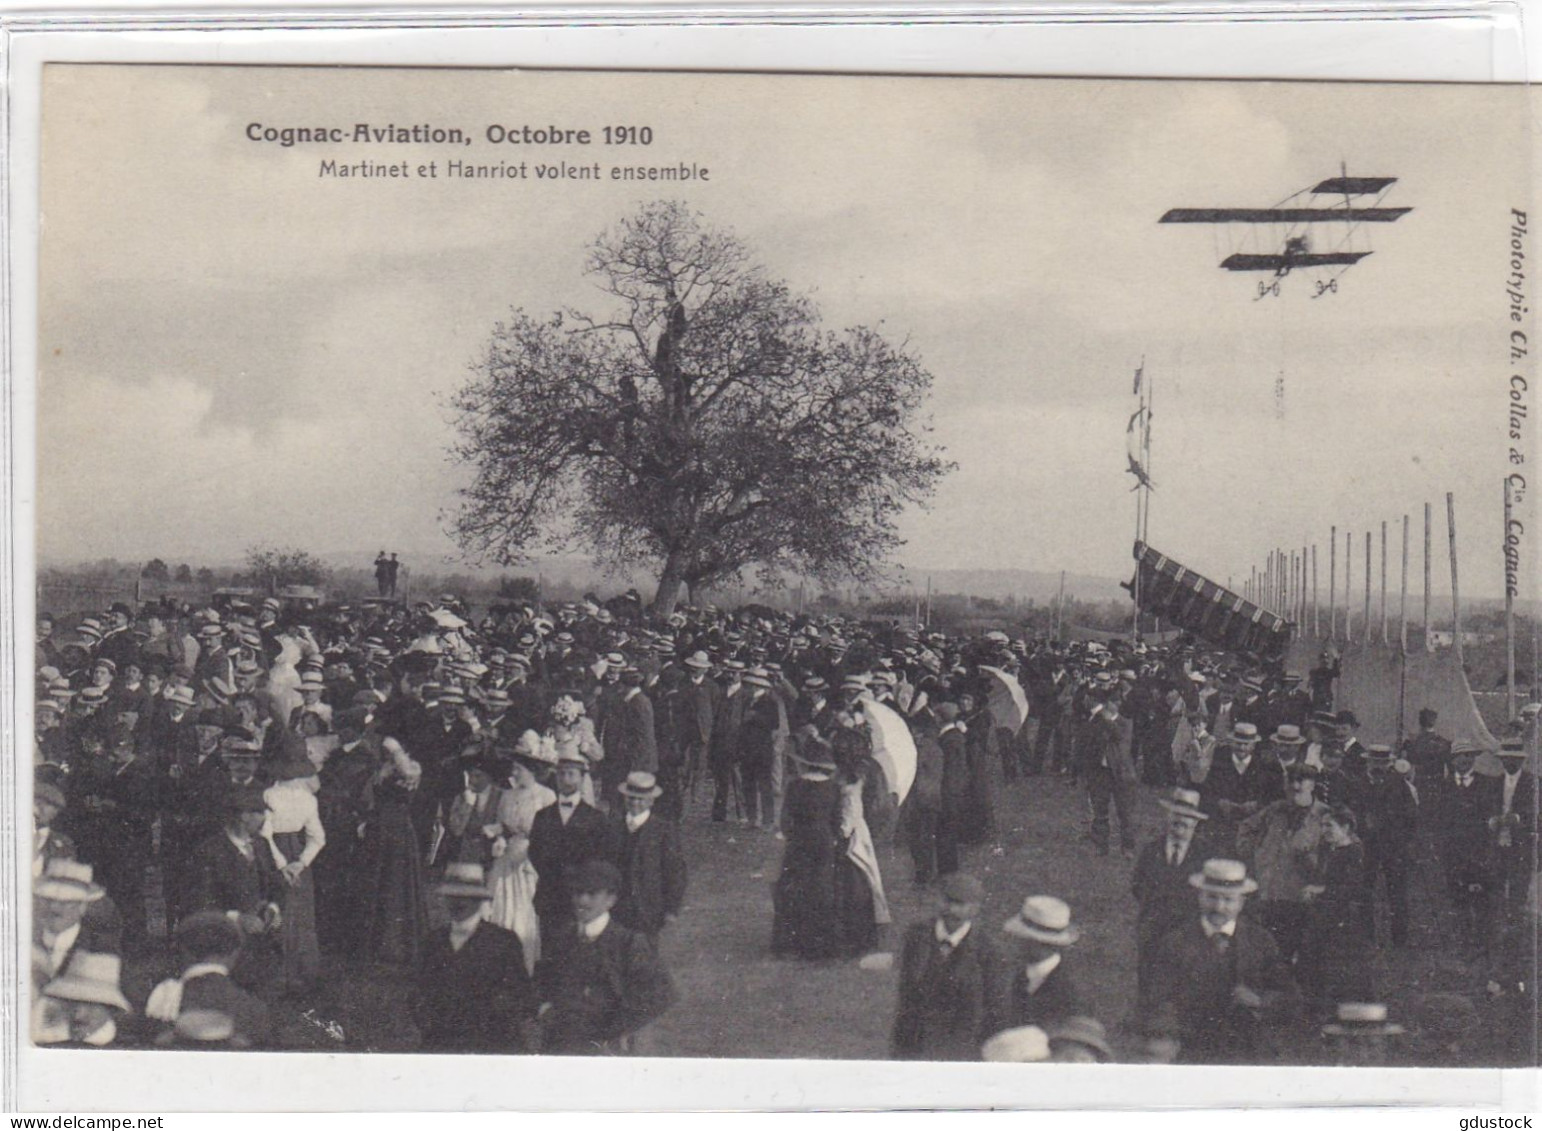 Cognac-Aviation - Octobre 1910 - Martinet Et Hanriot Volent Ensemble - Airmen, Fliers